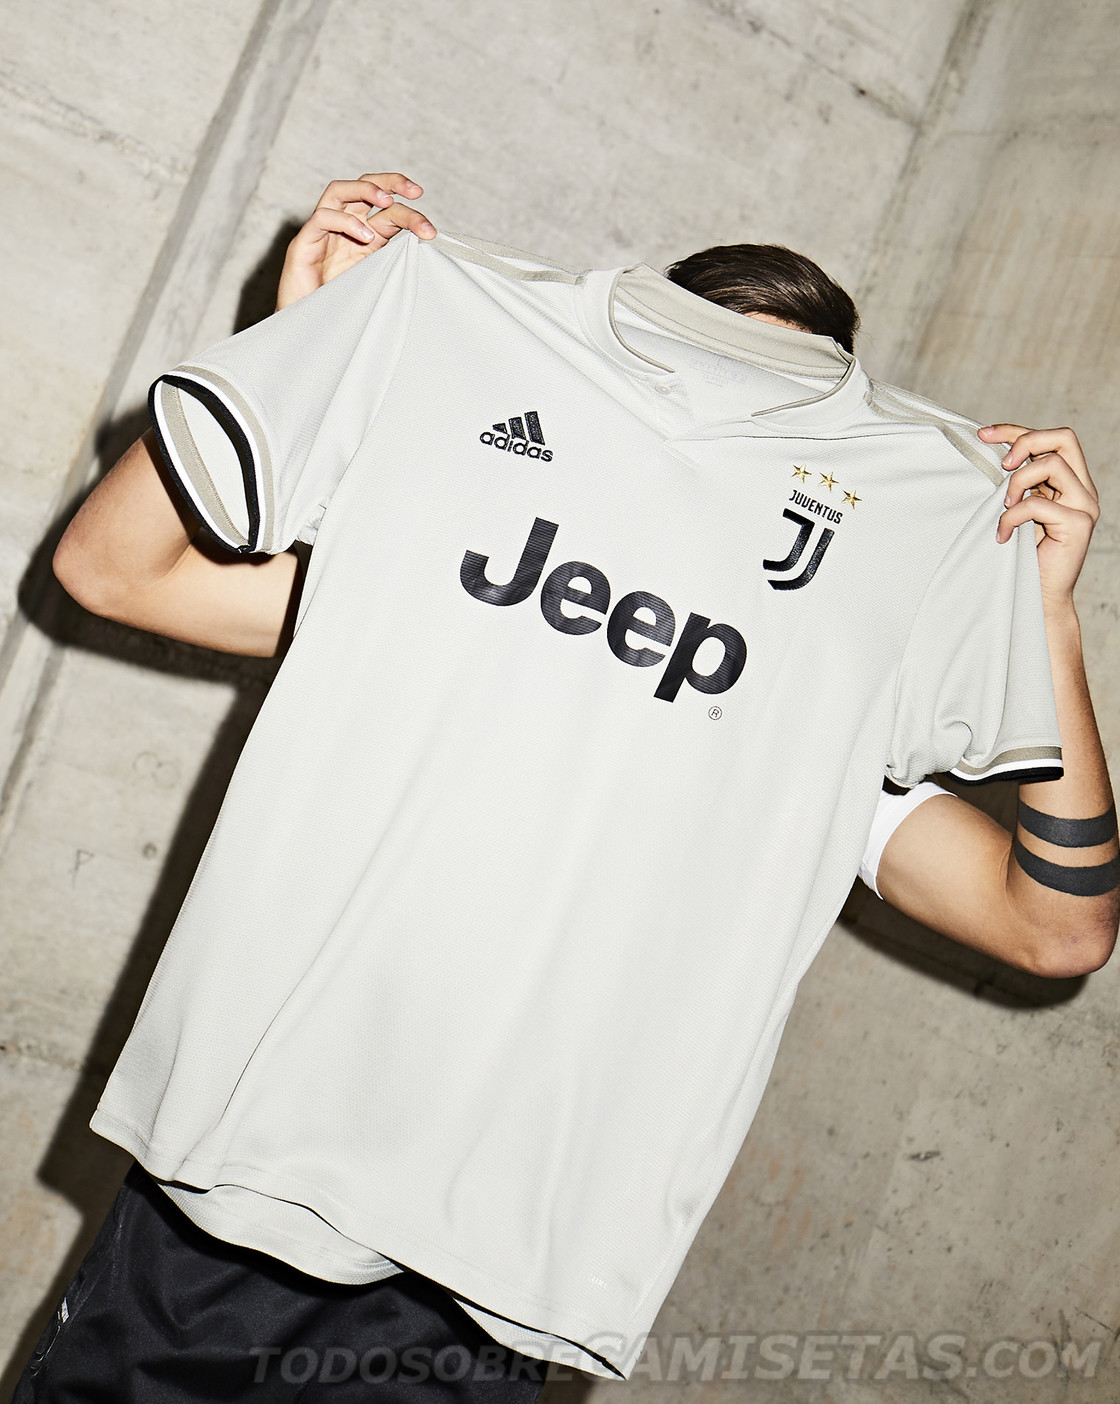 Juventus FC adidas Away Kit 2018-19